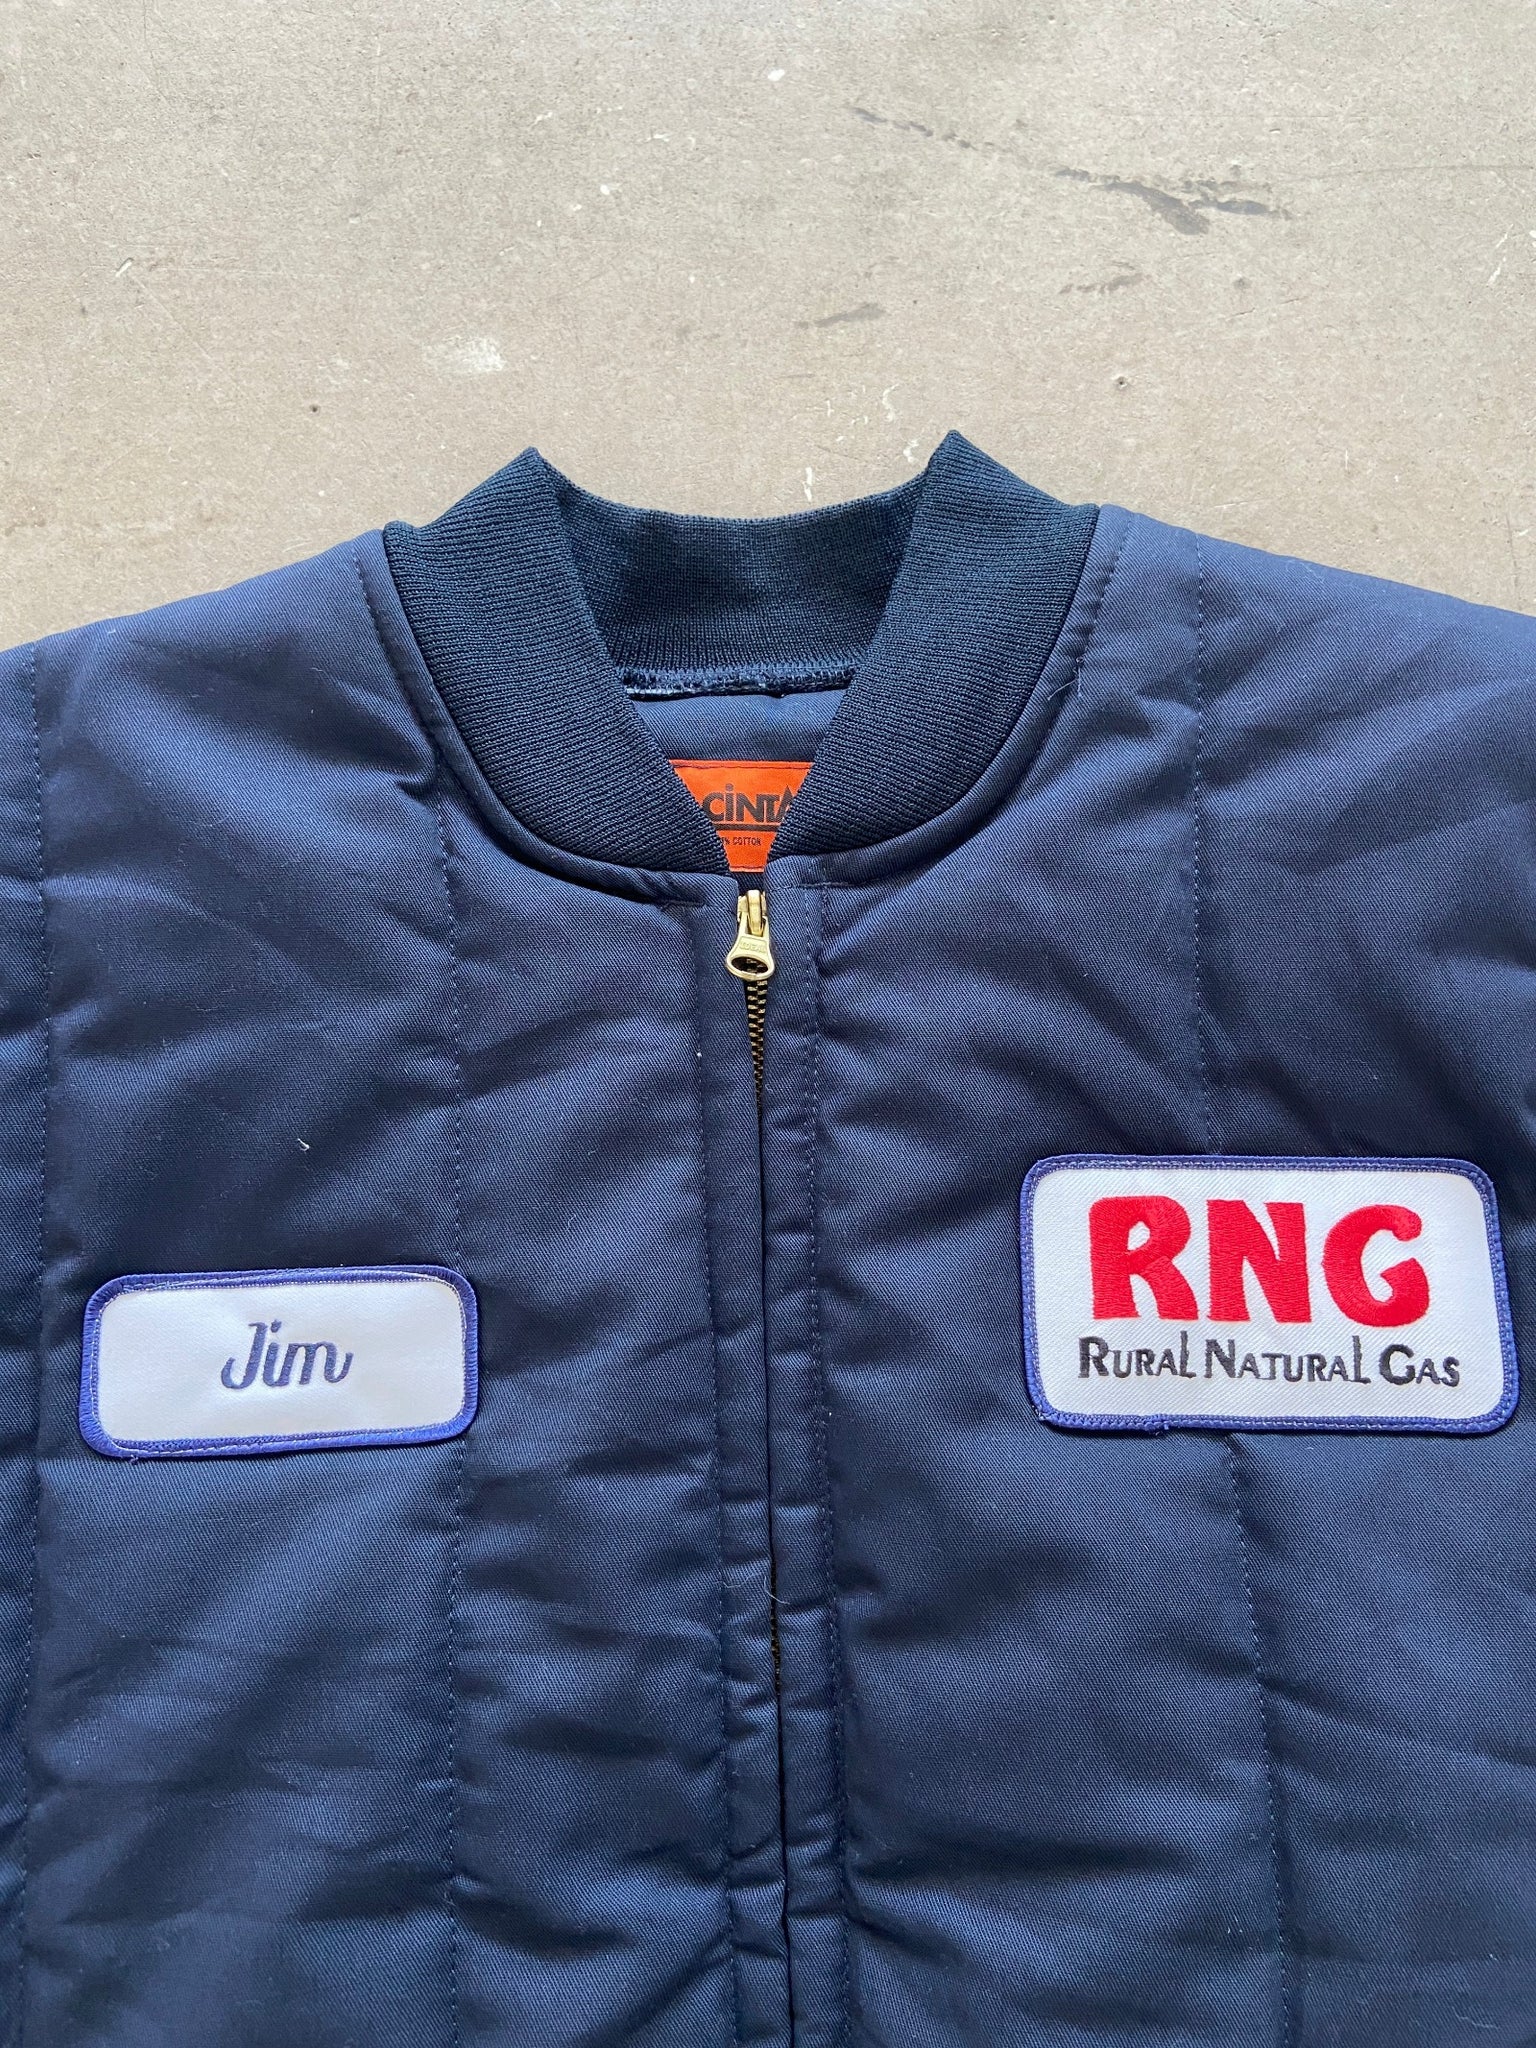 Cintas RNG Work Vest - L